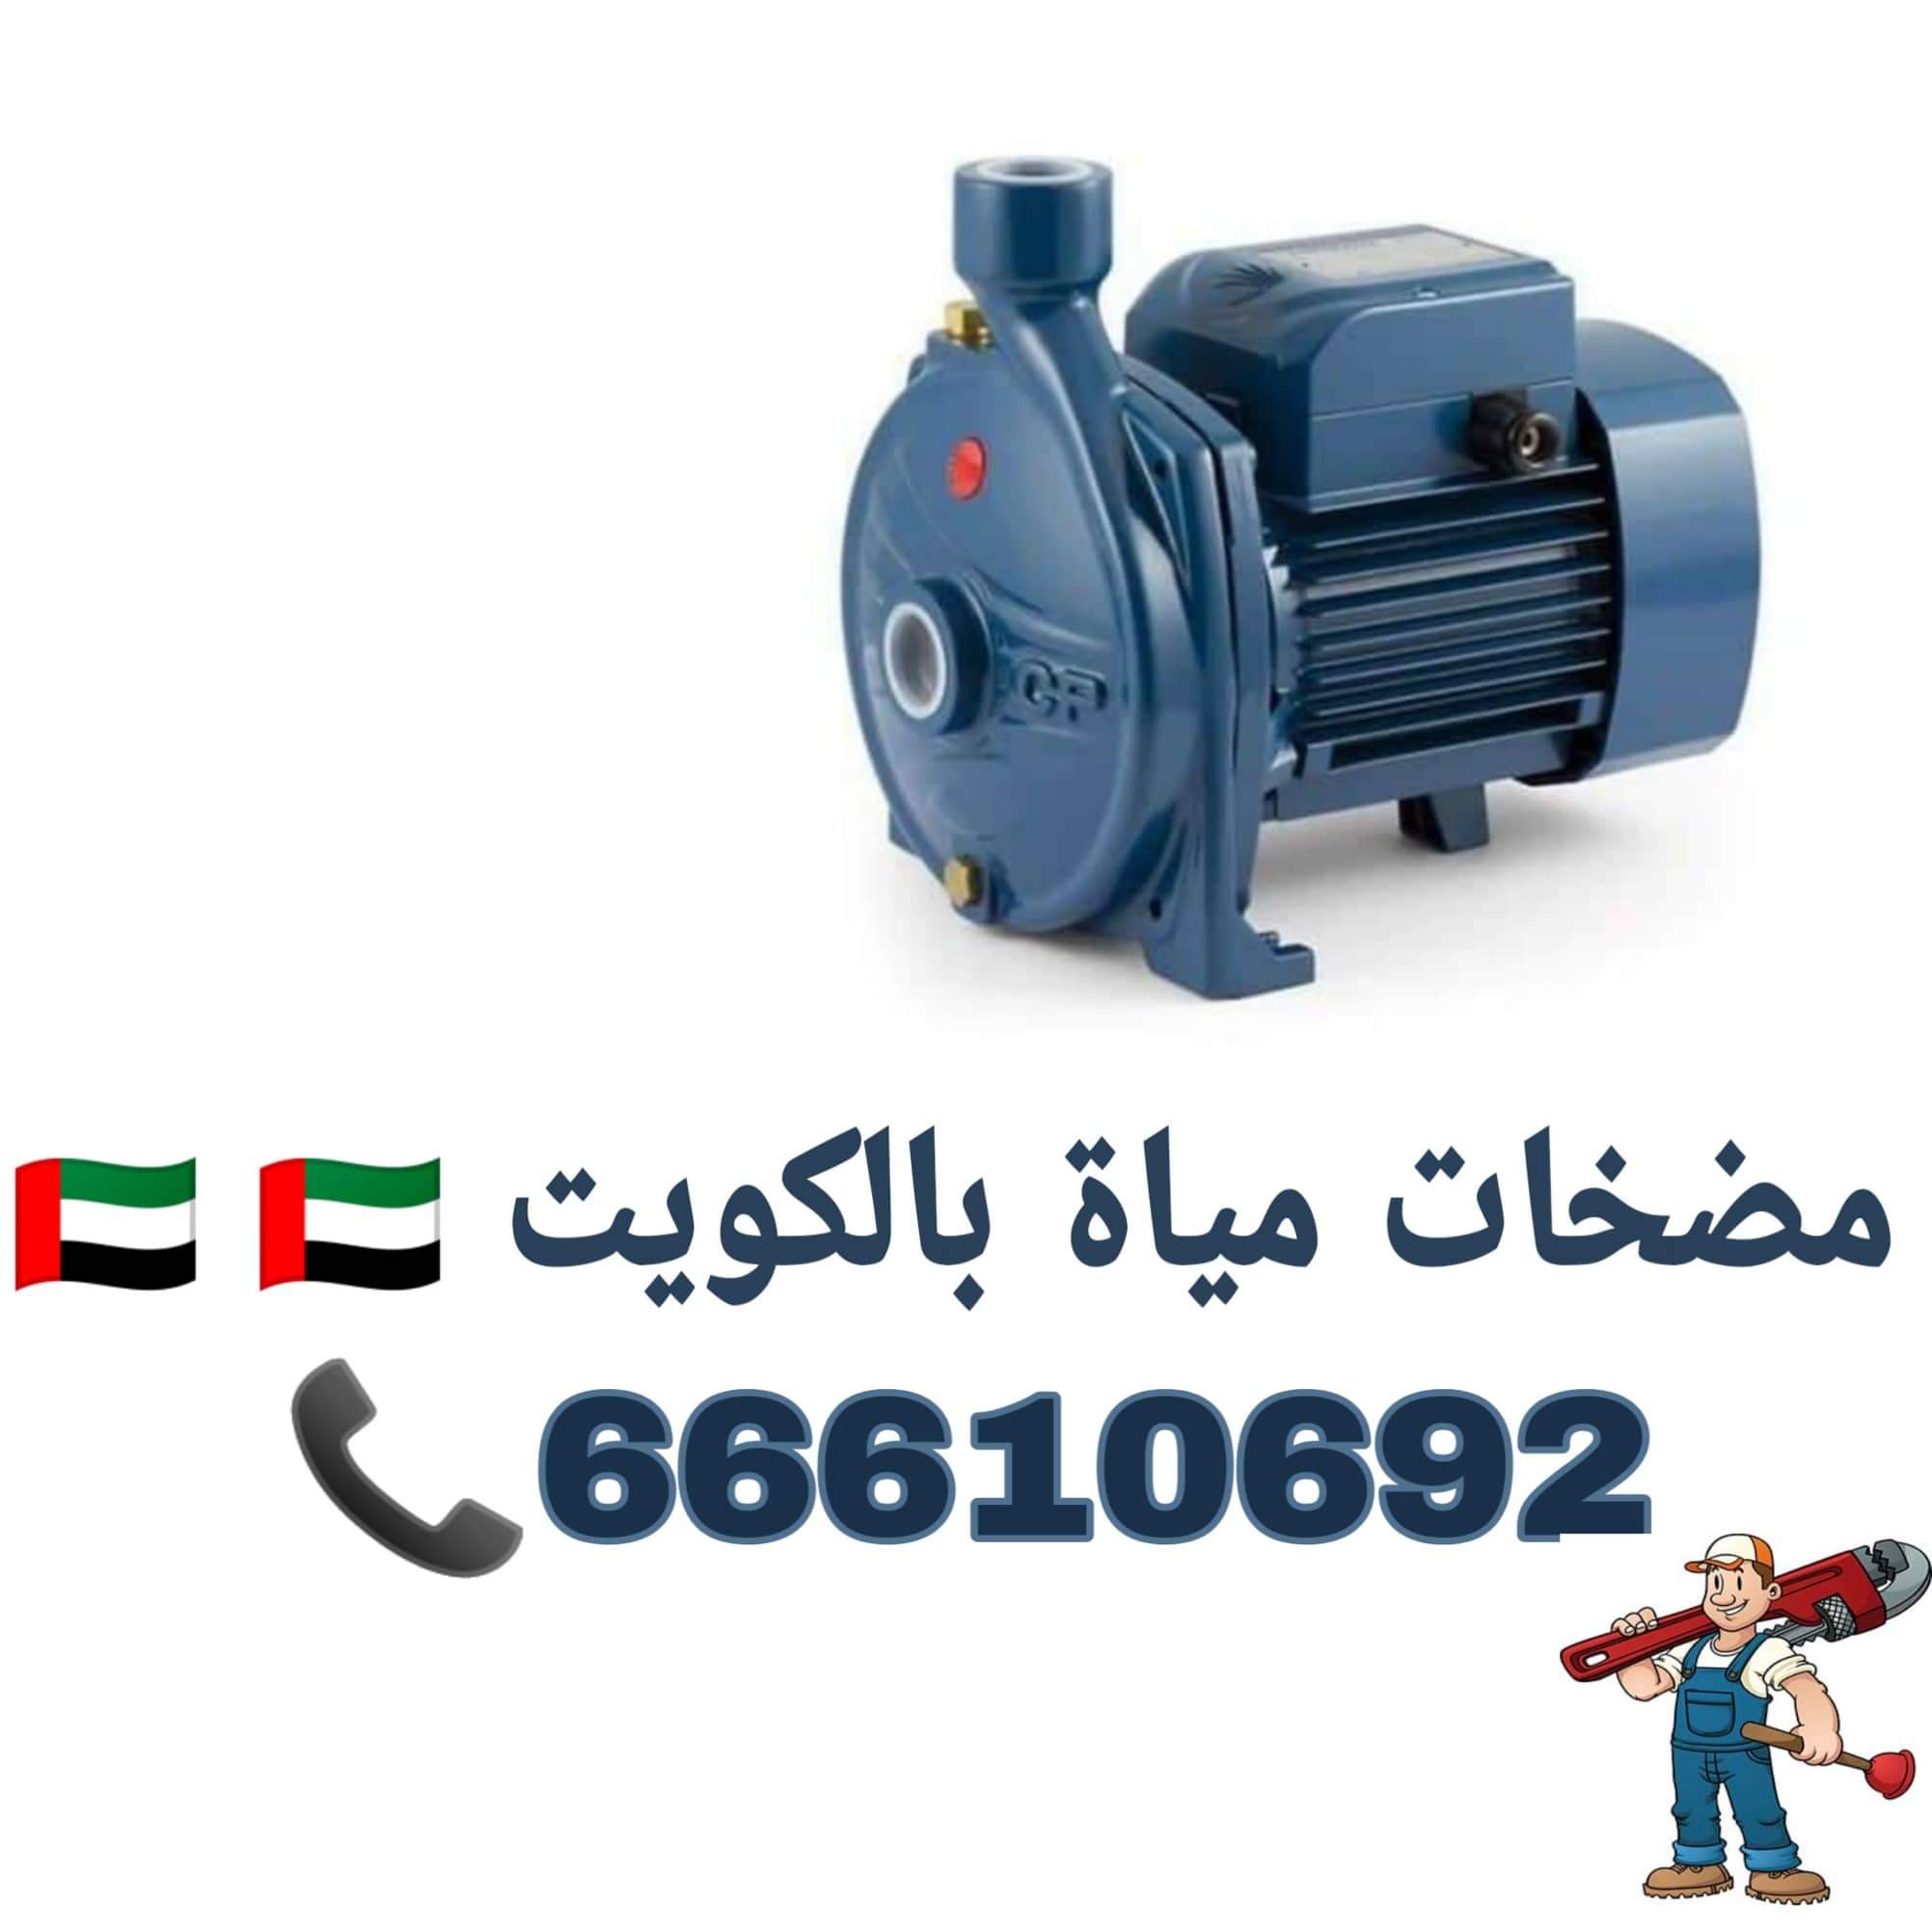 تركيب مضخات مياه / 66610692 / صيانة وتركيب مضخات مياه الكويت